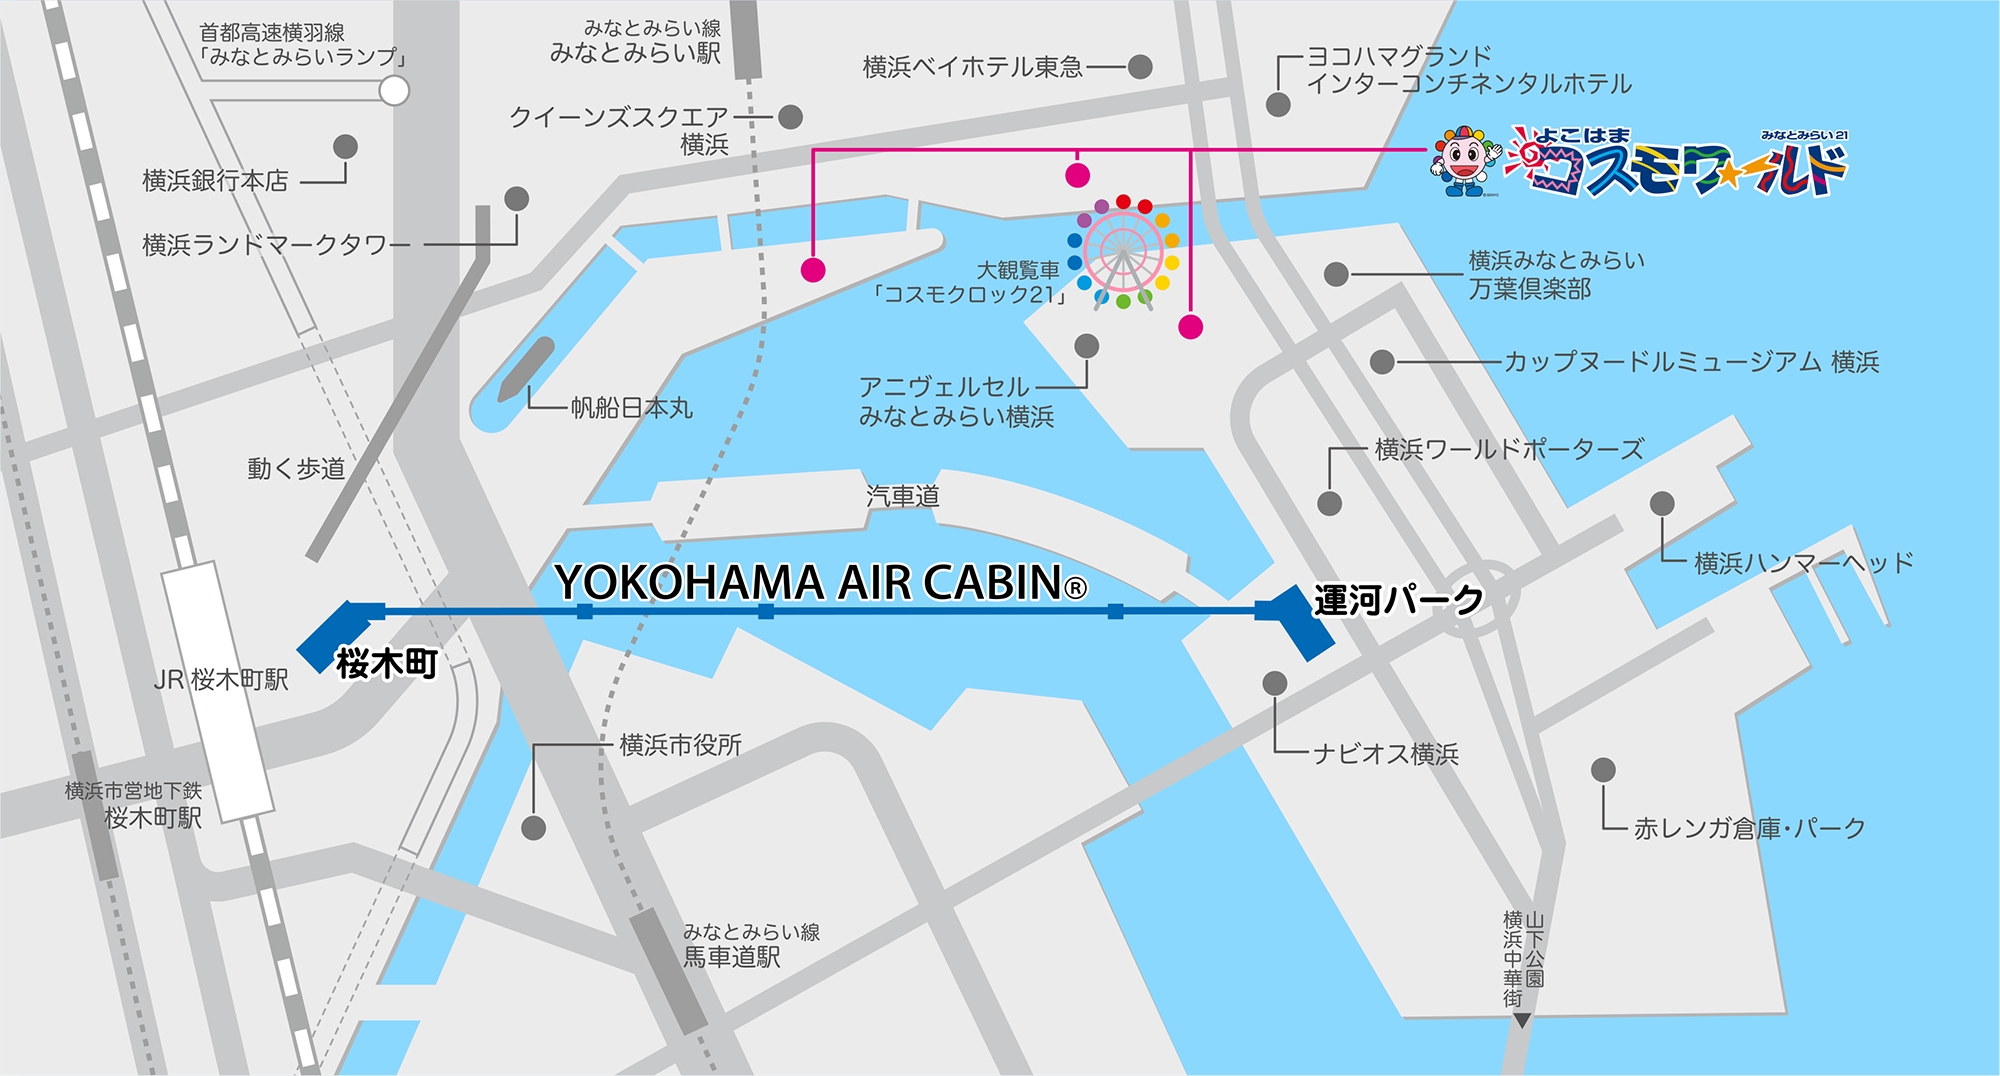 ☆【橫濱】橫濱自由行看這篇！14個必訪景點推薦行程